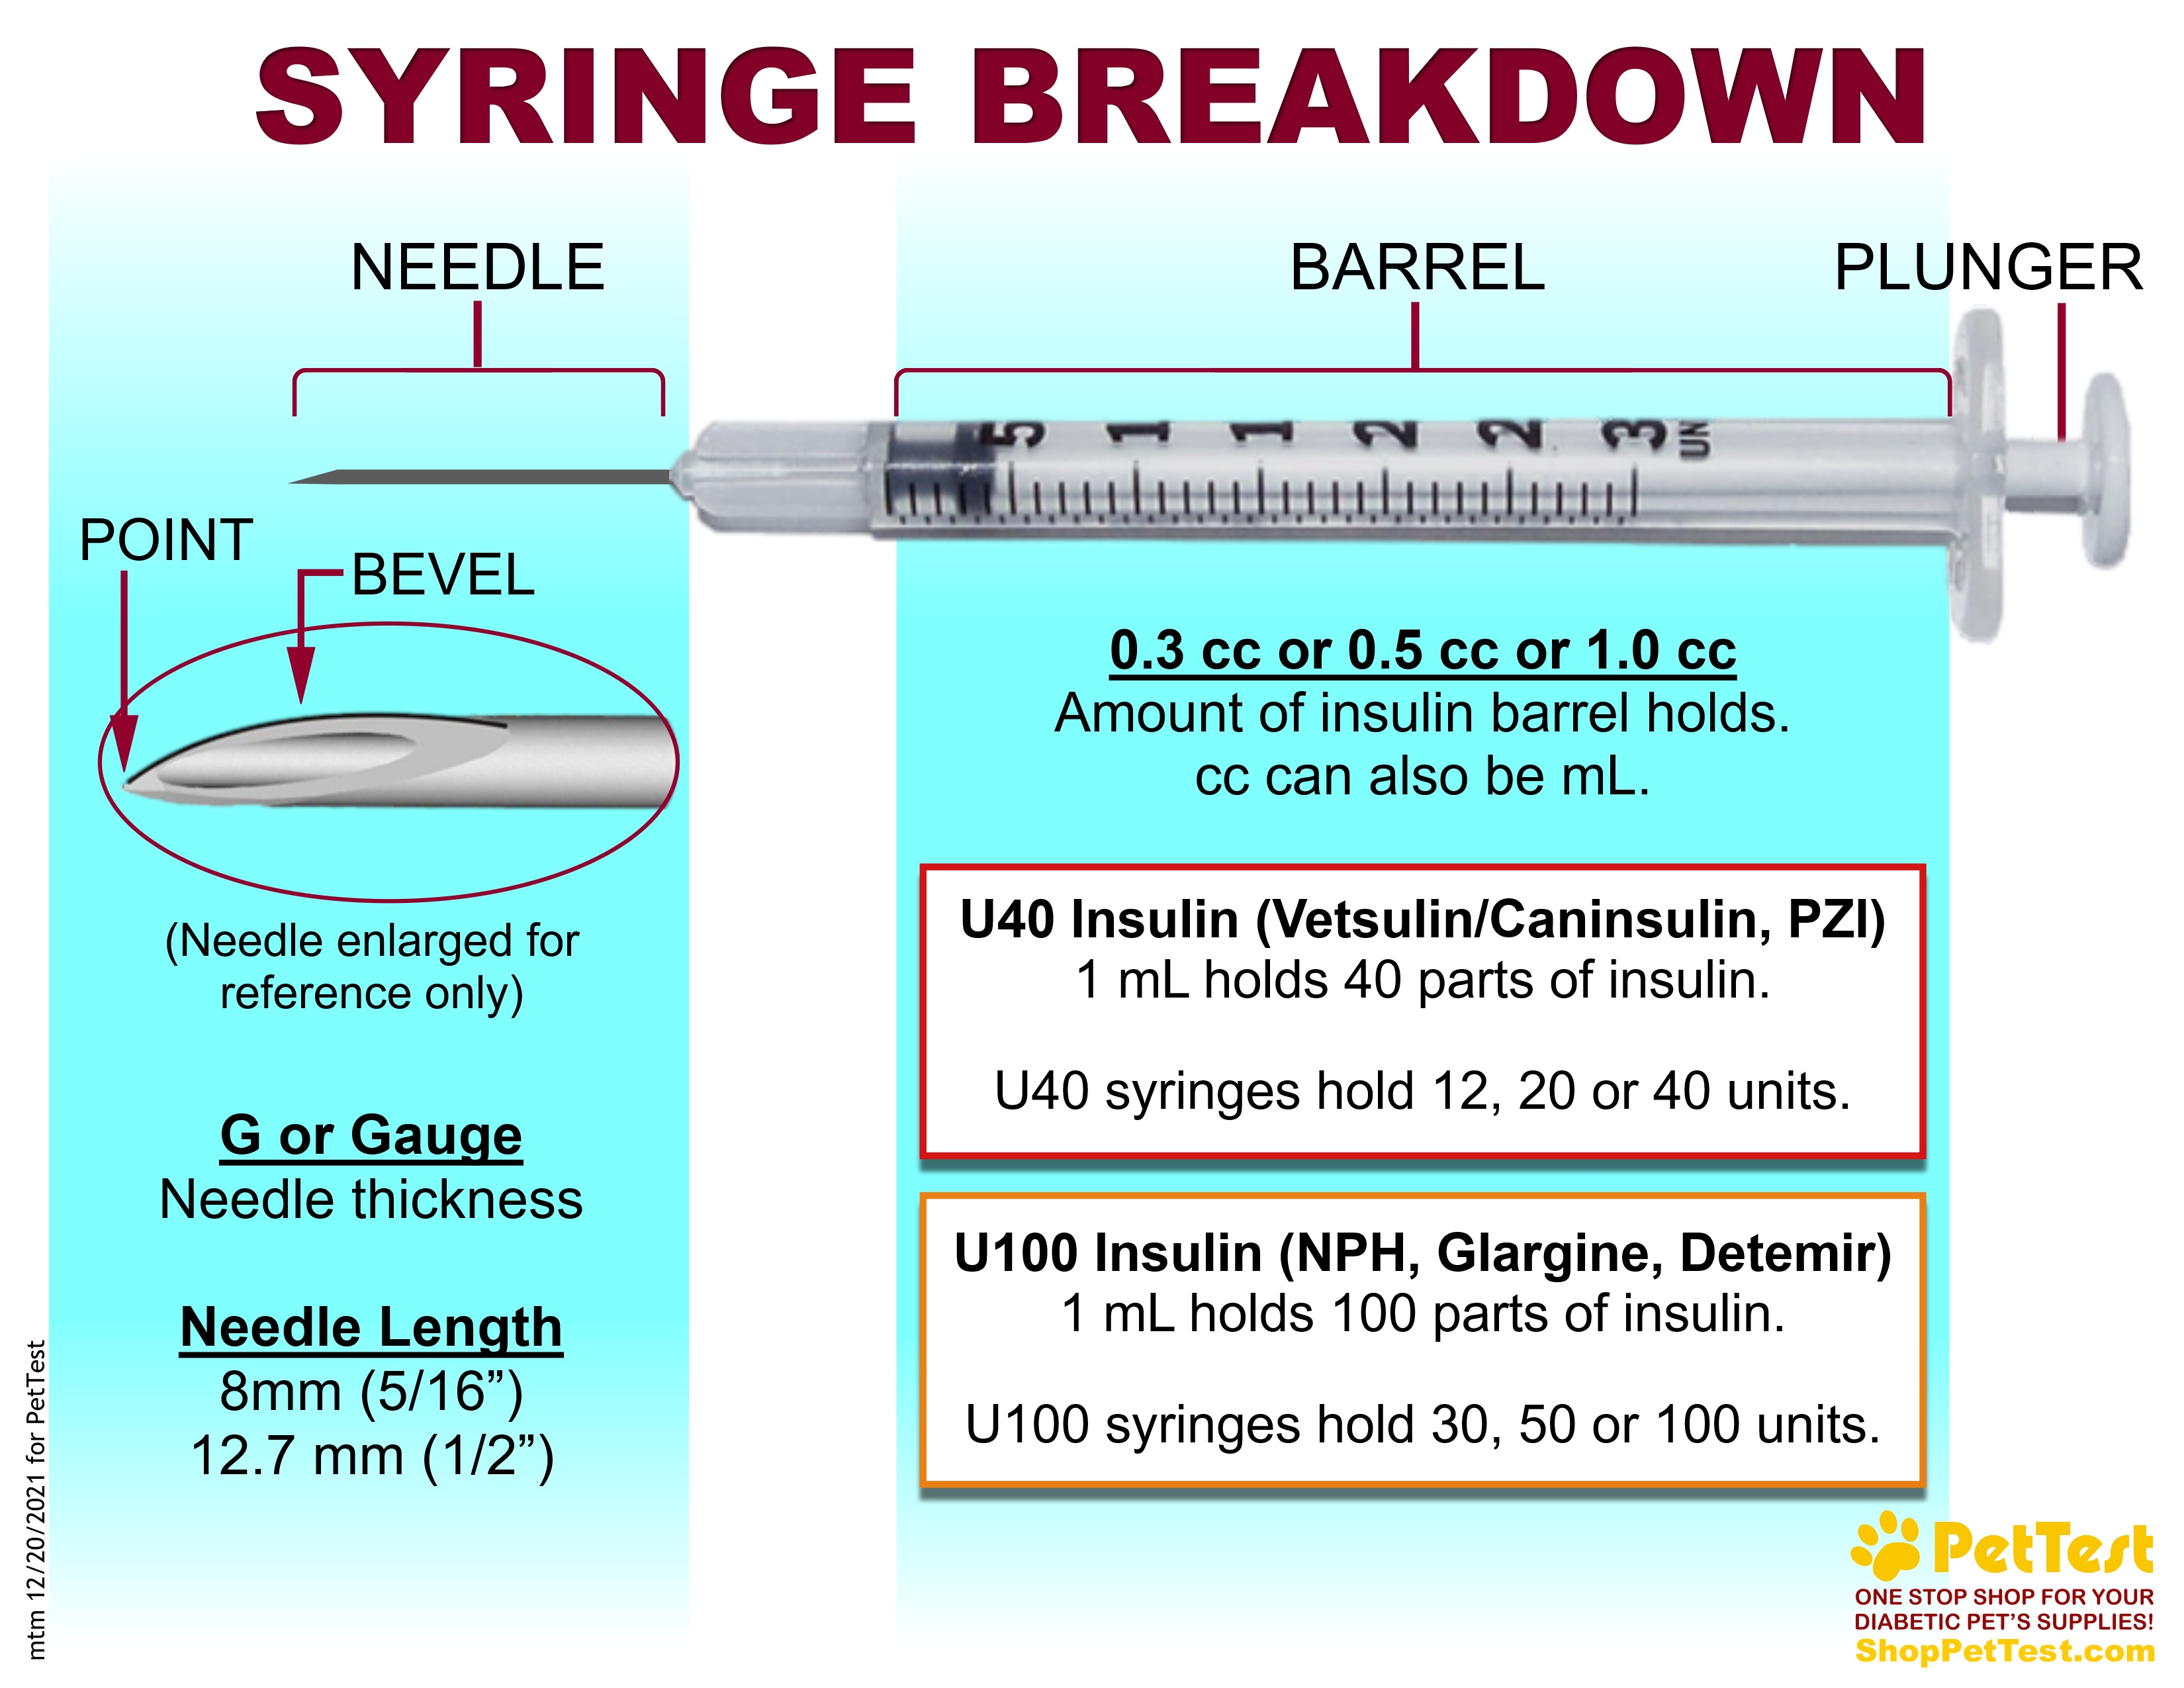 Syringe Breakdown for PT Blog mtm 12202021